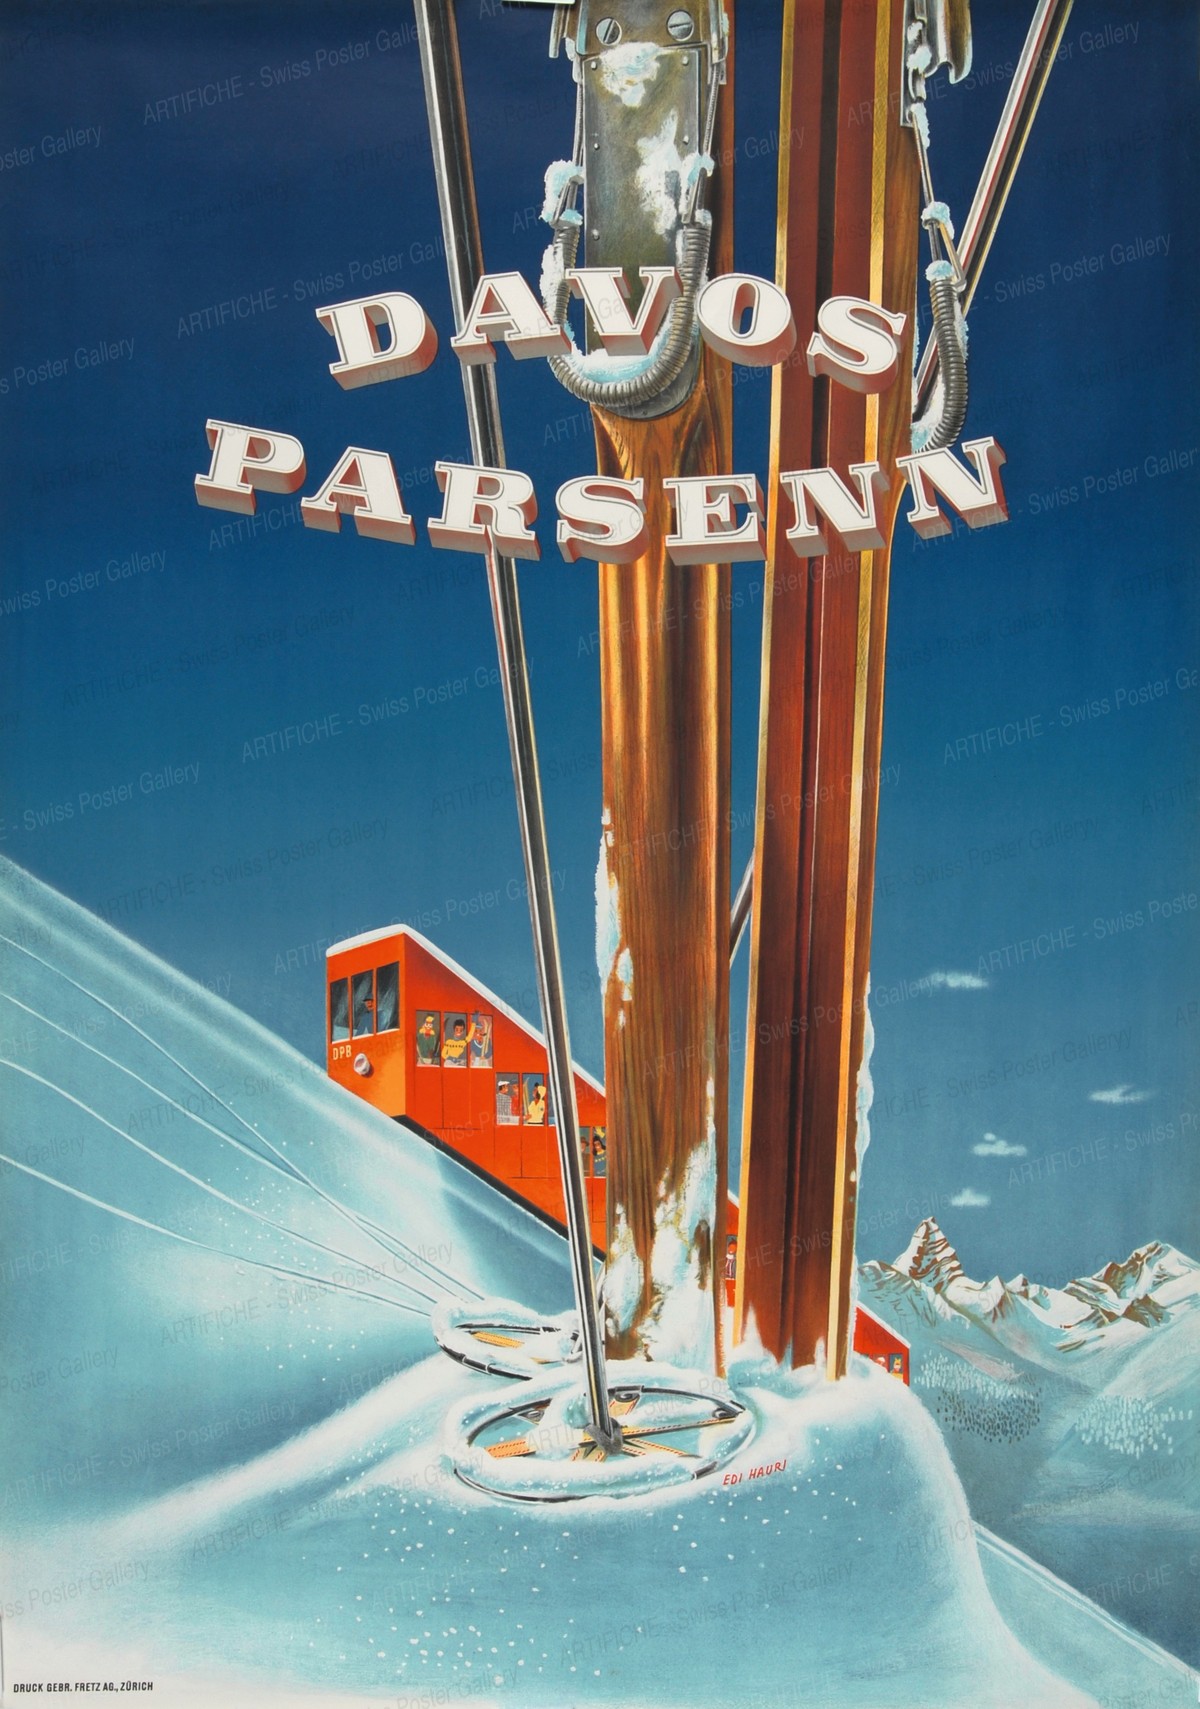 Davos Parsenn, Edi Hauri